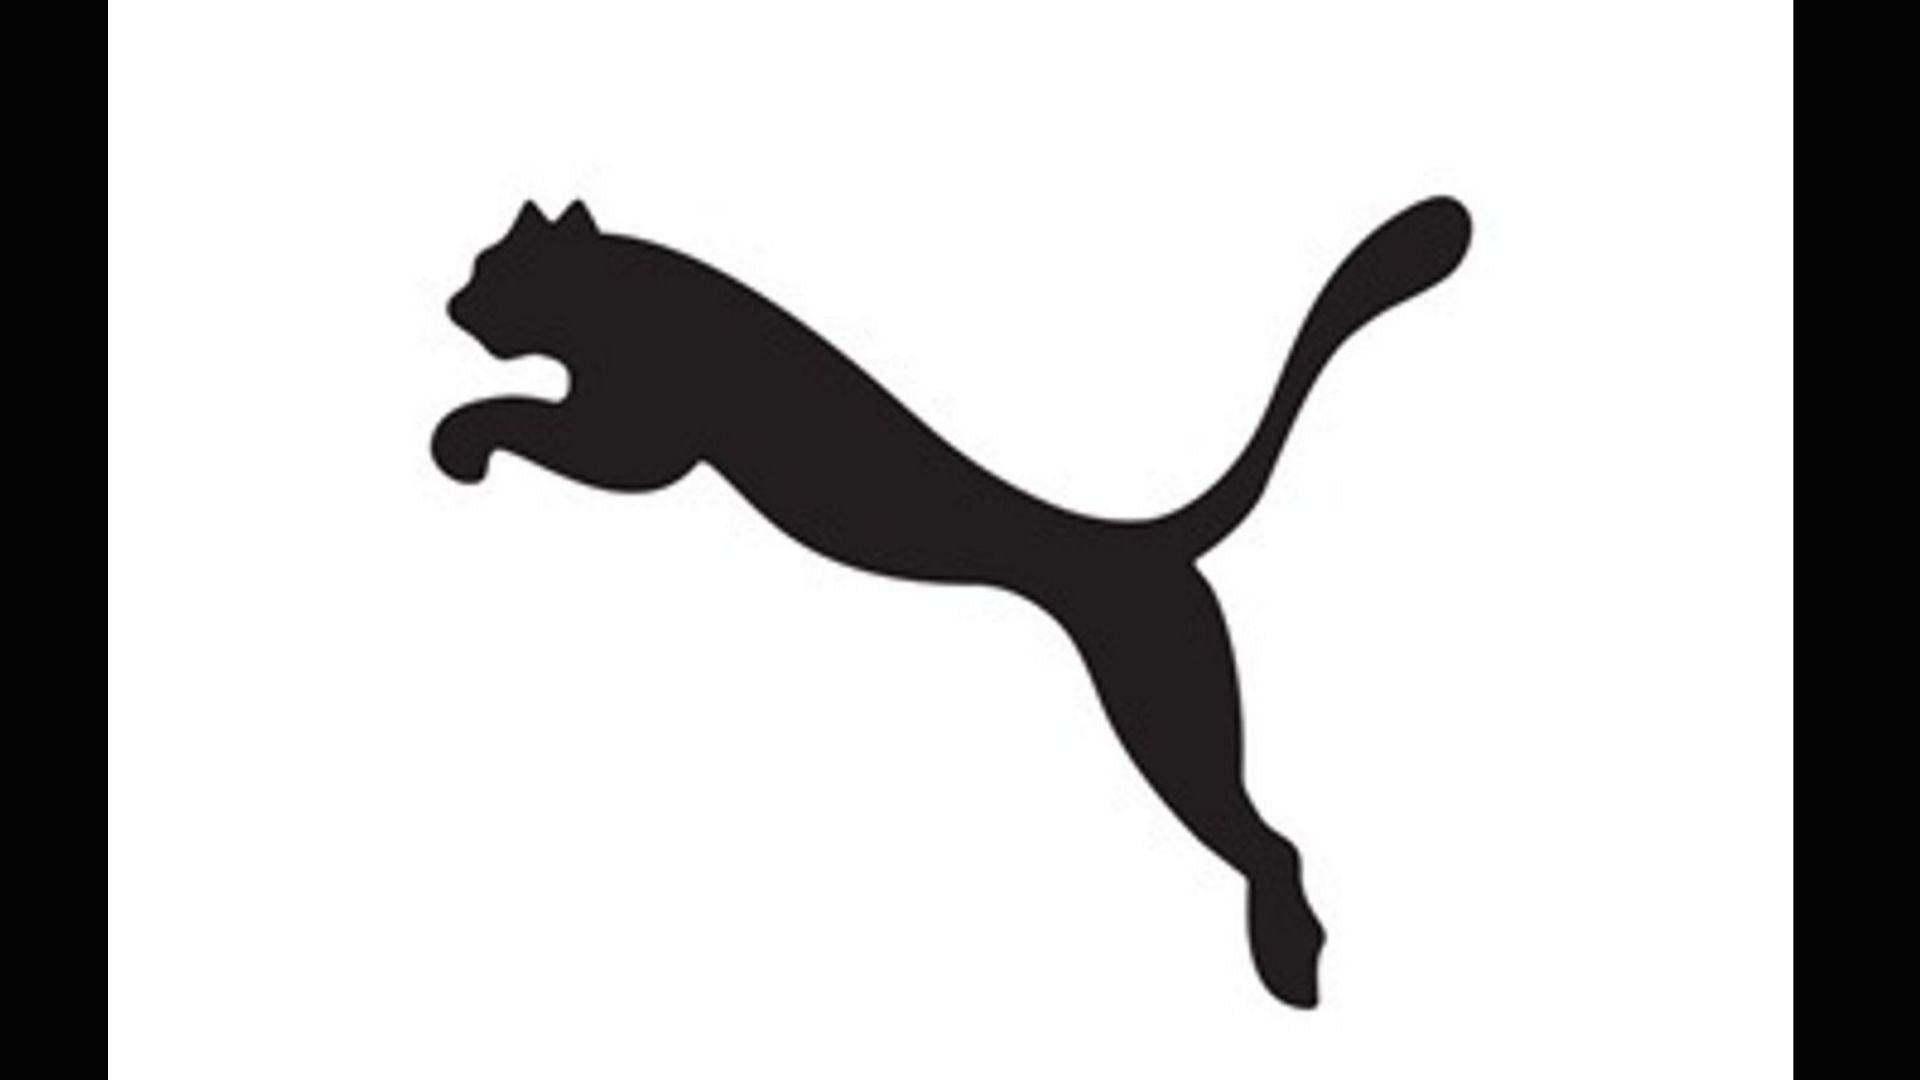 Color of the Puma logo is officially kept black (Image via Ouma)